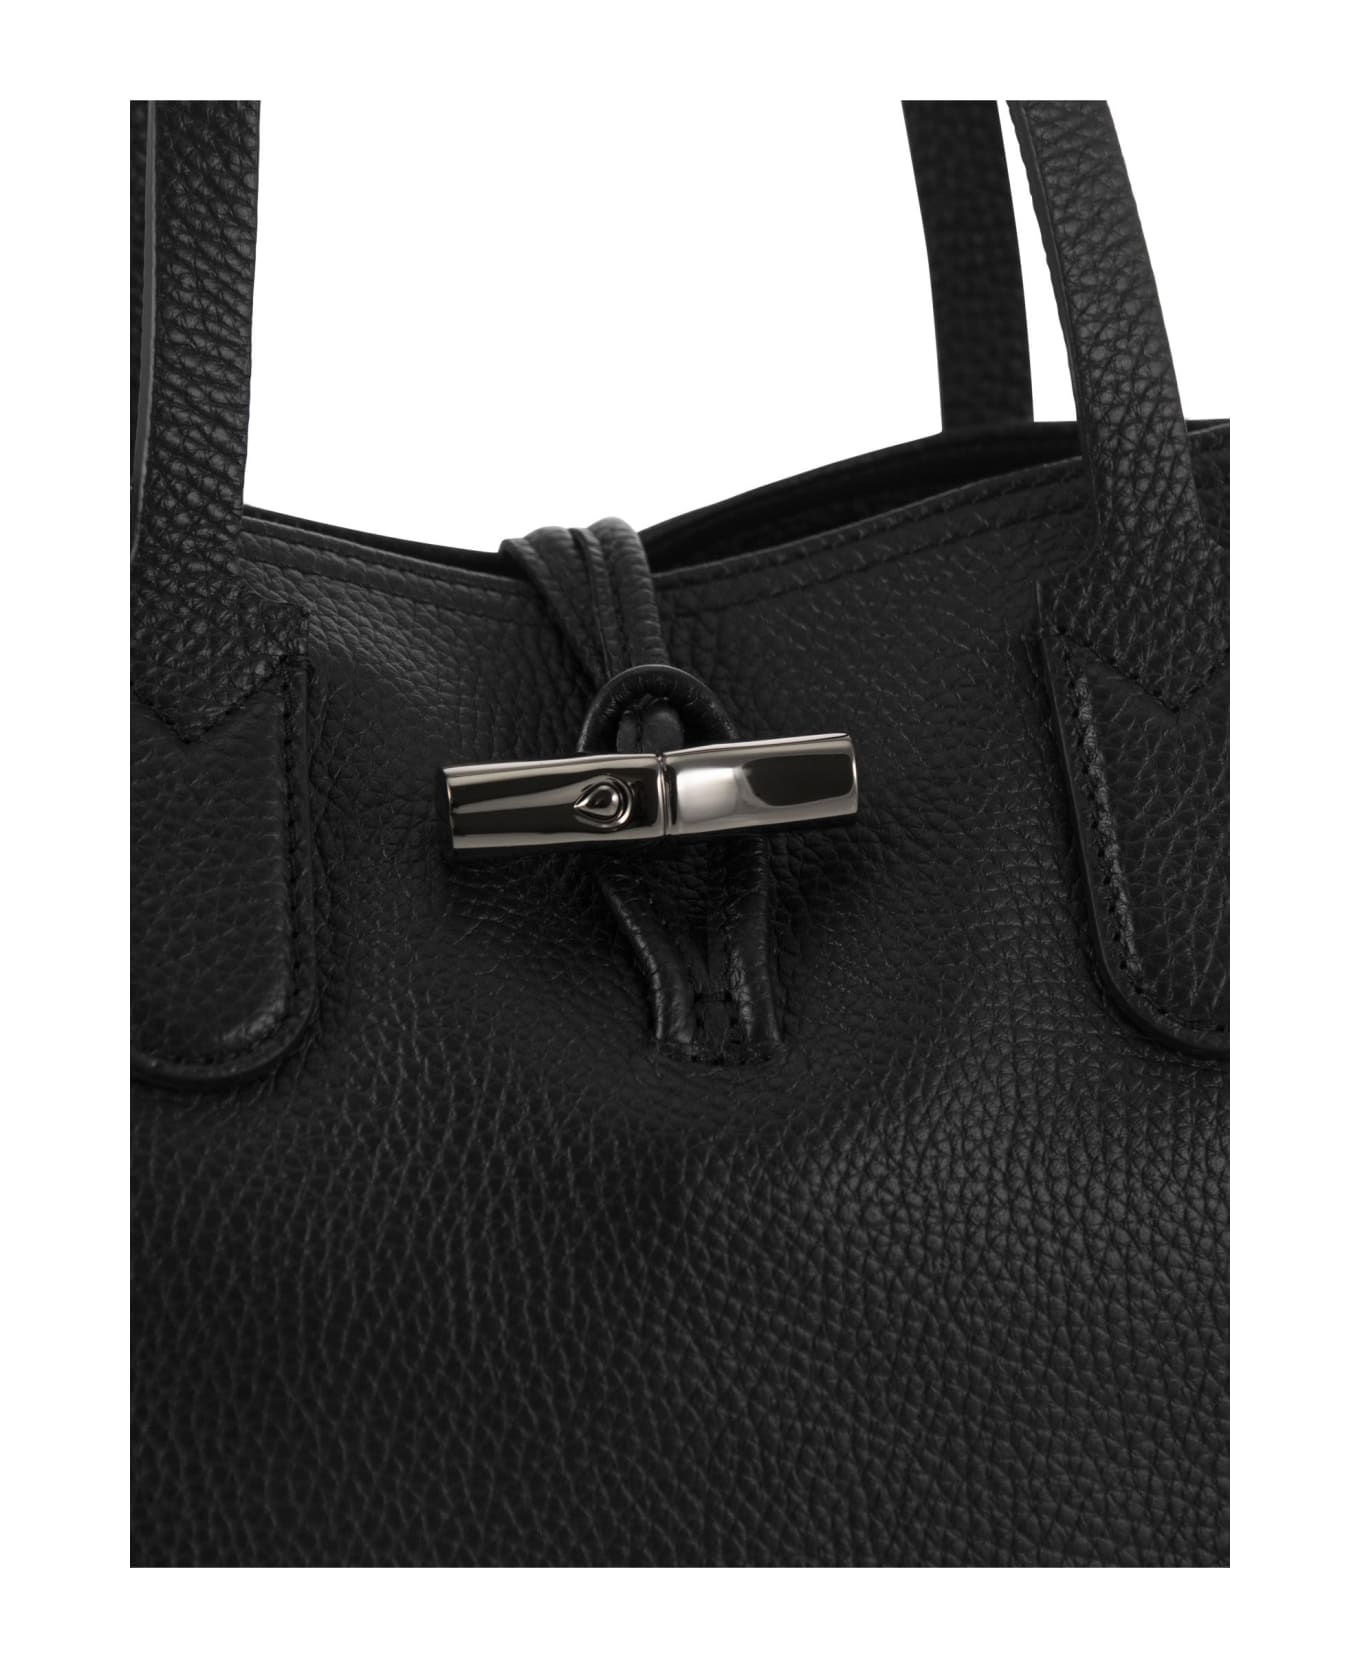 Longchamp Roseau Essential - Shoulder Bag - Black トートバッグ